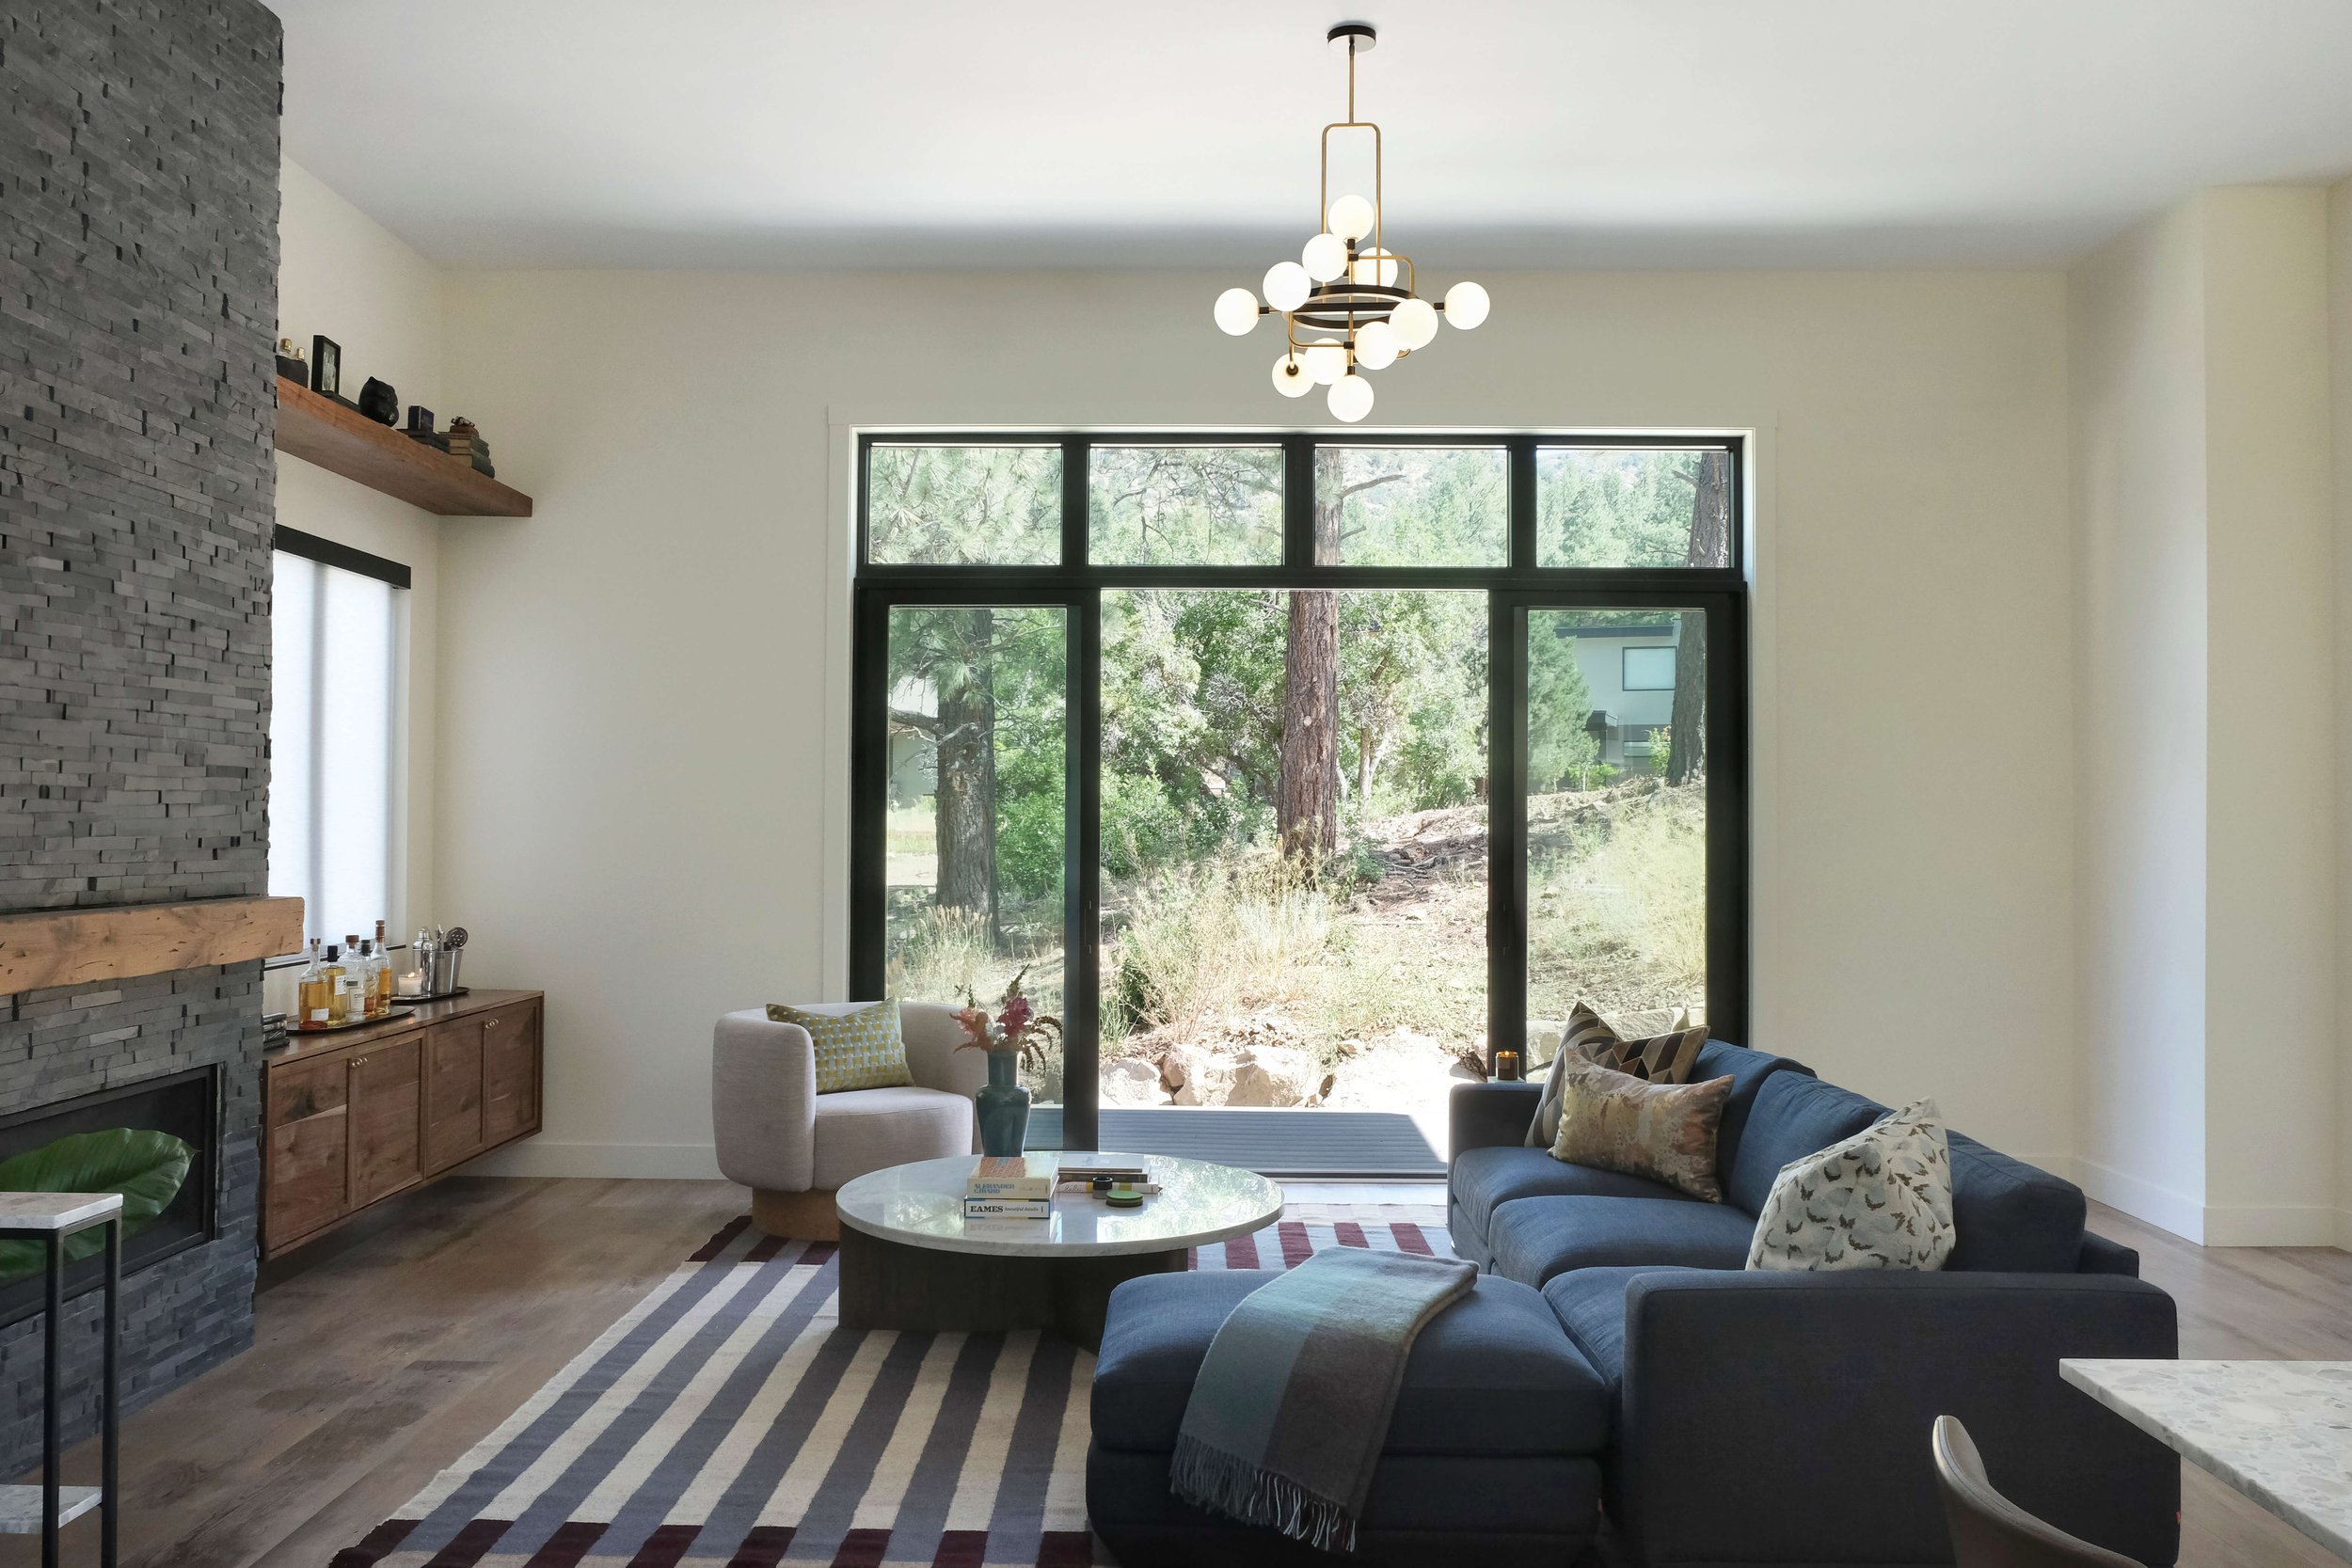 Dorothy Parker Durango Interior Design Blue sofa living room and contemporary chandelier.jpg